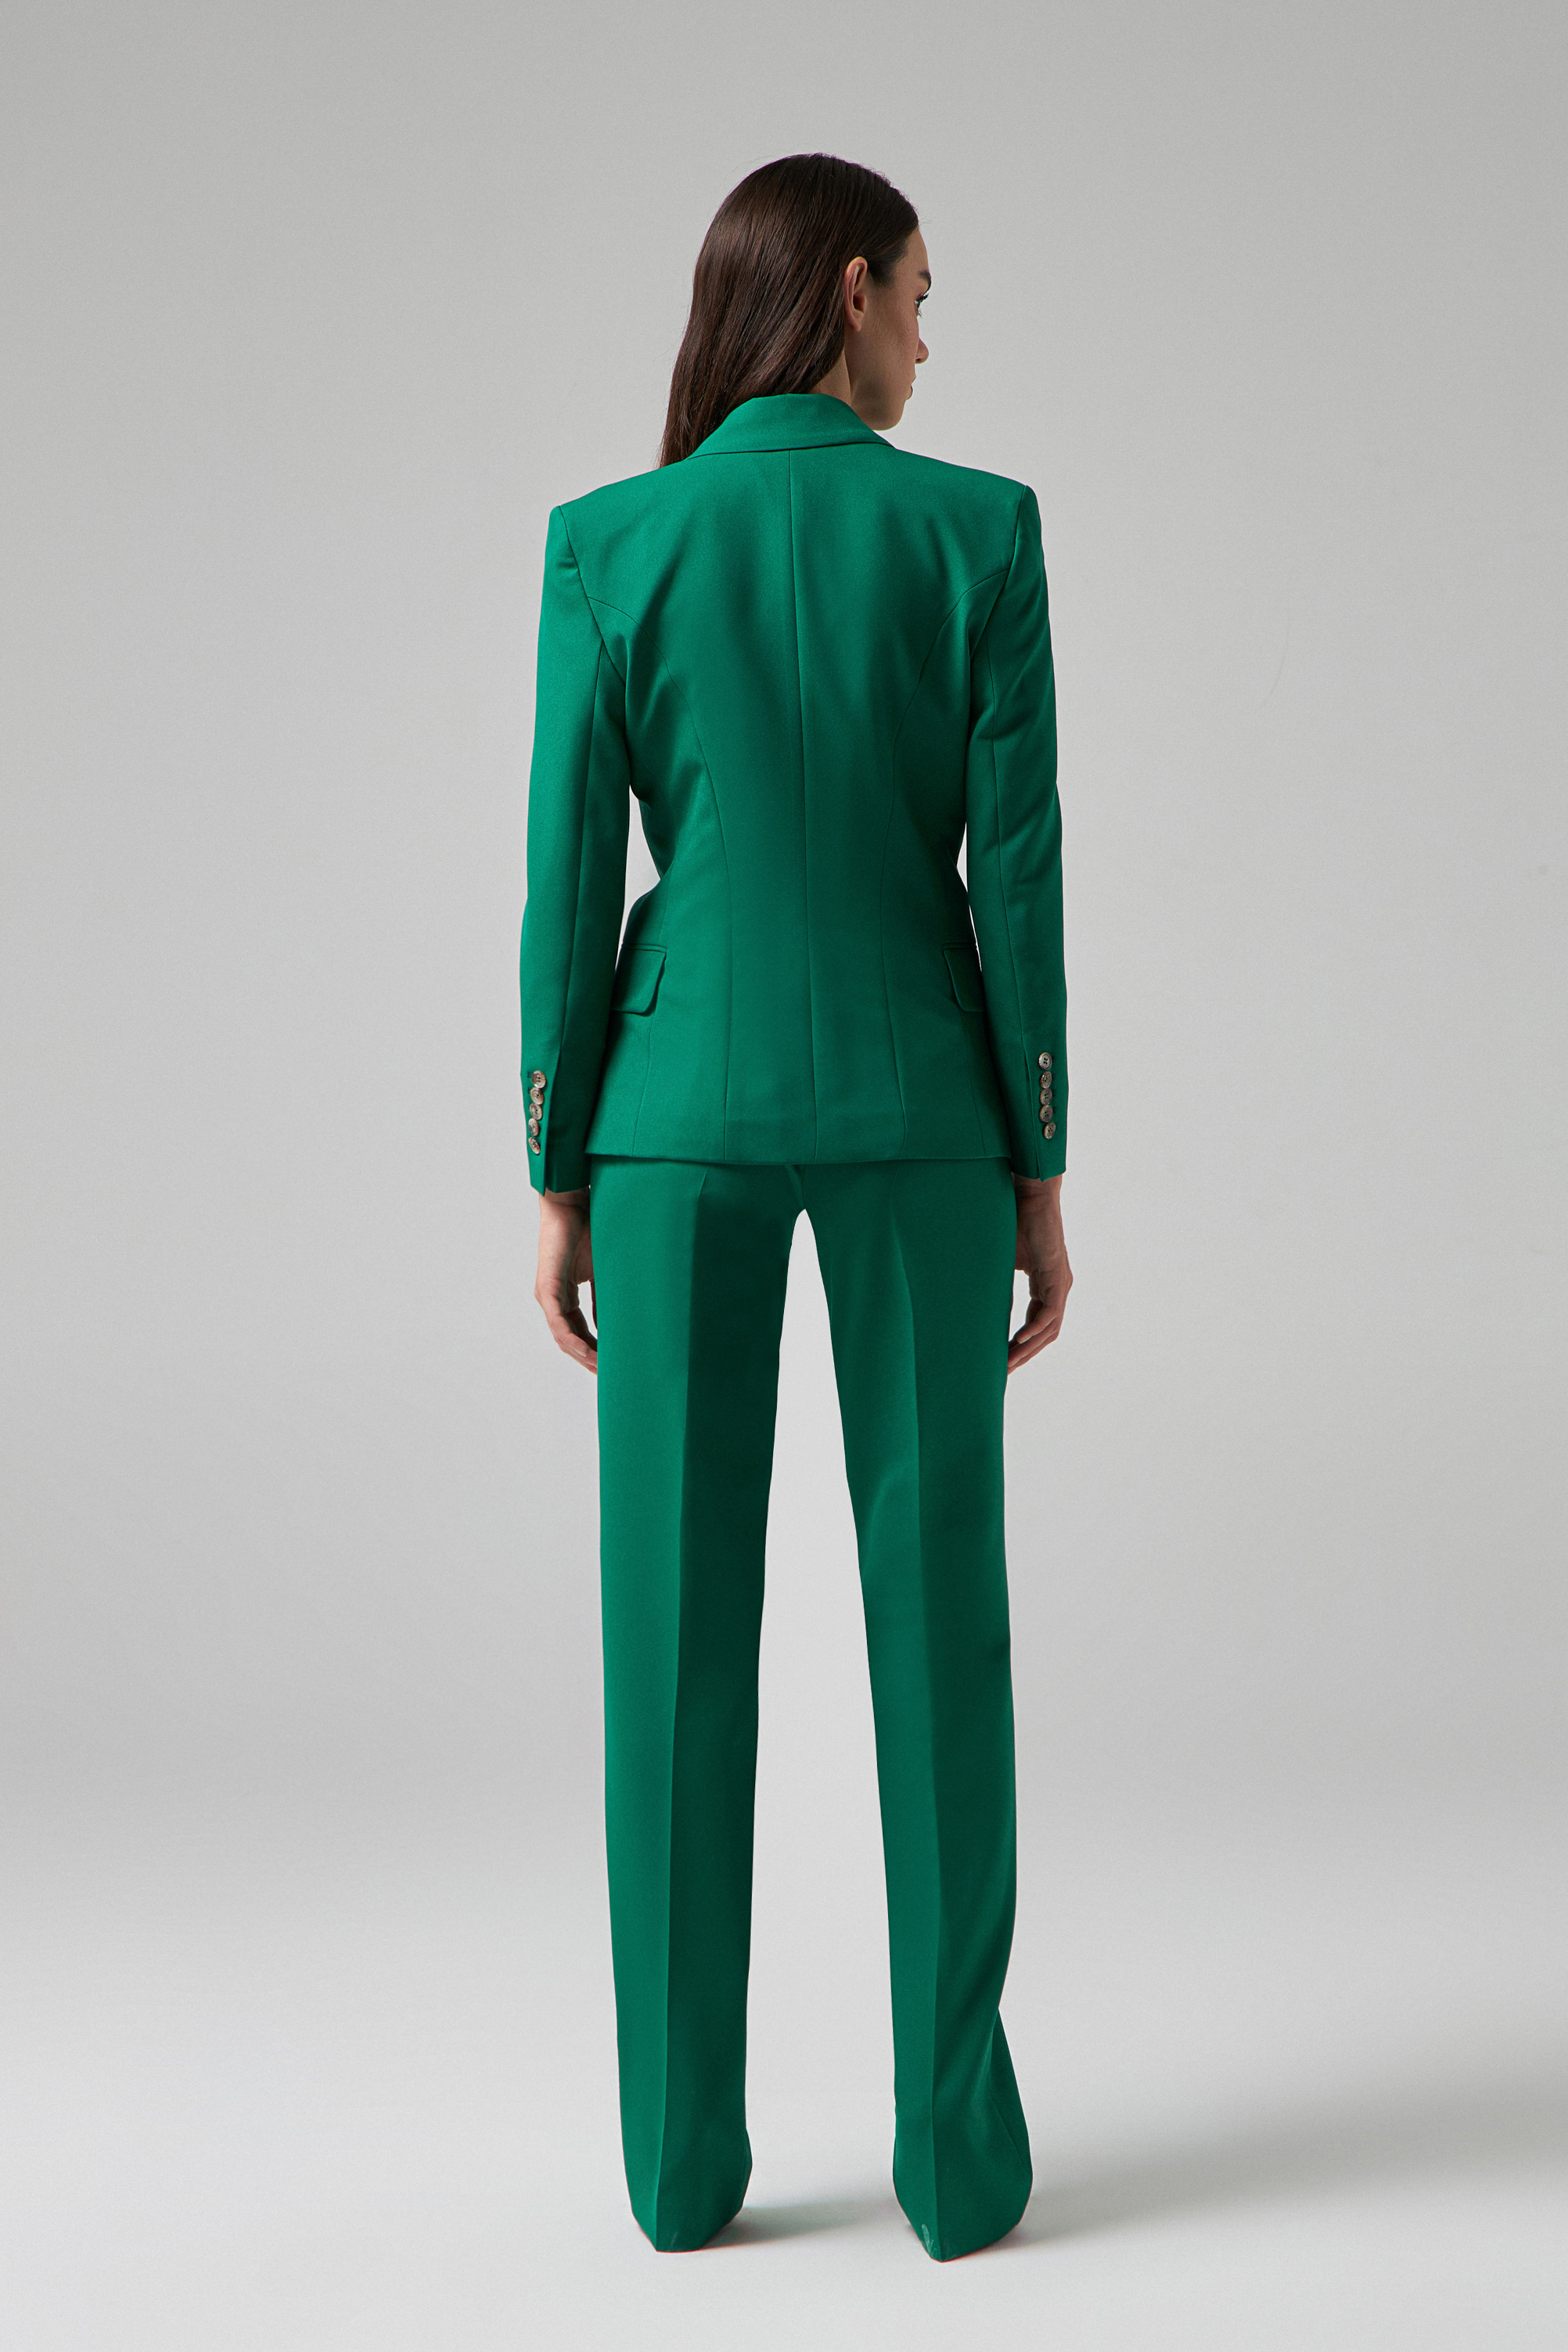 Damat Tween Damat Slim Fit Yeşil Takim Elbise Yelekli. 5